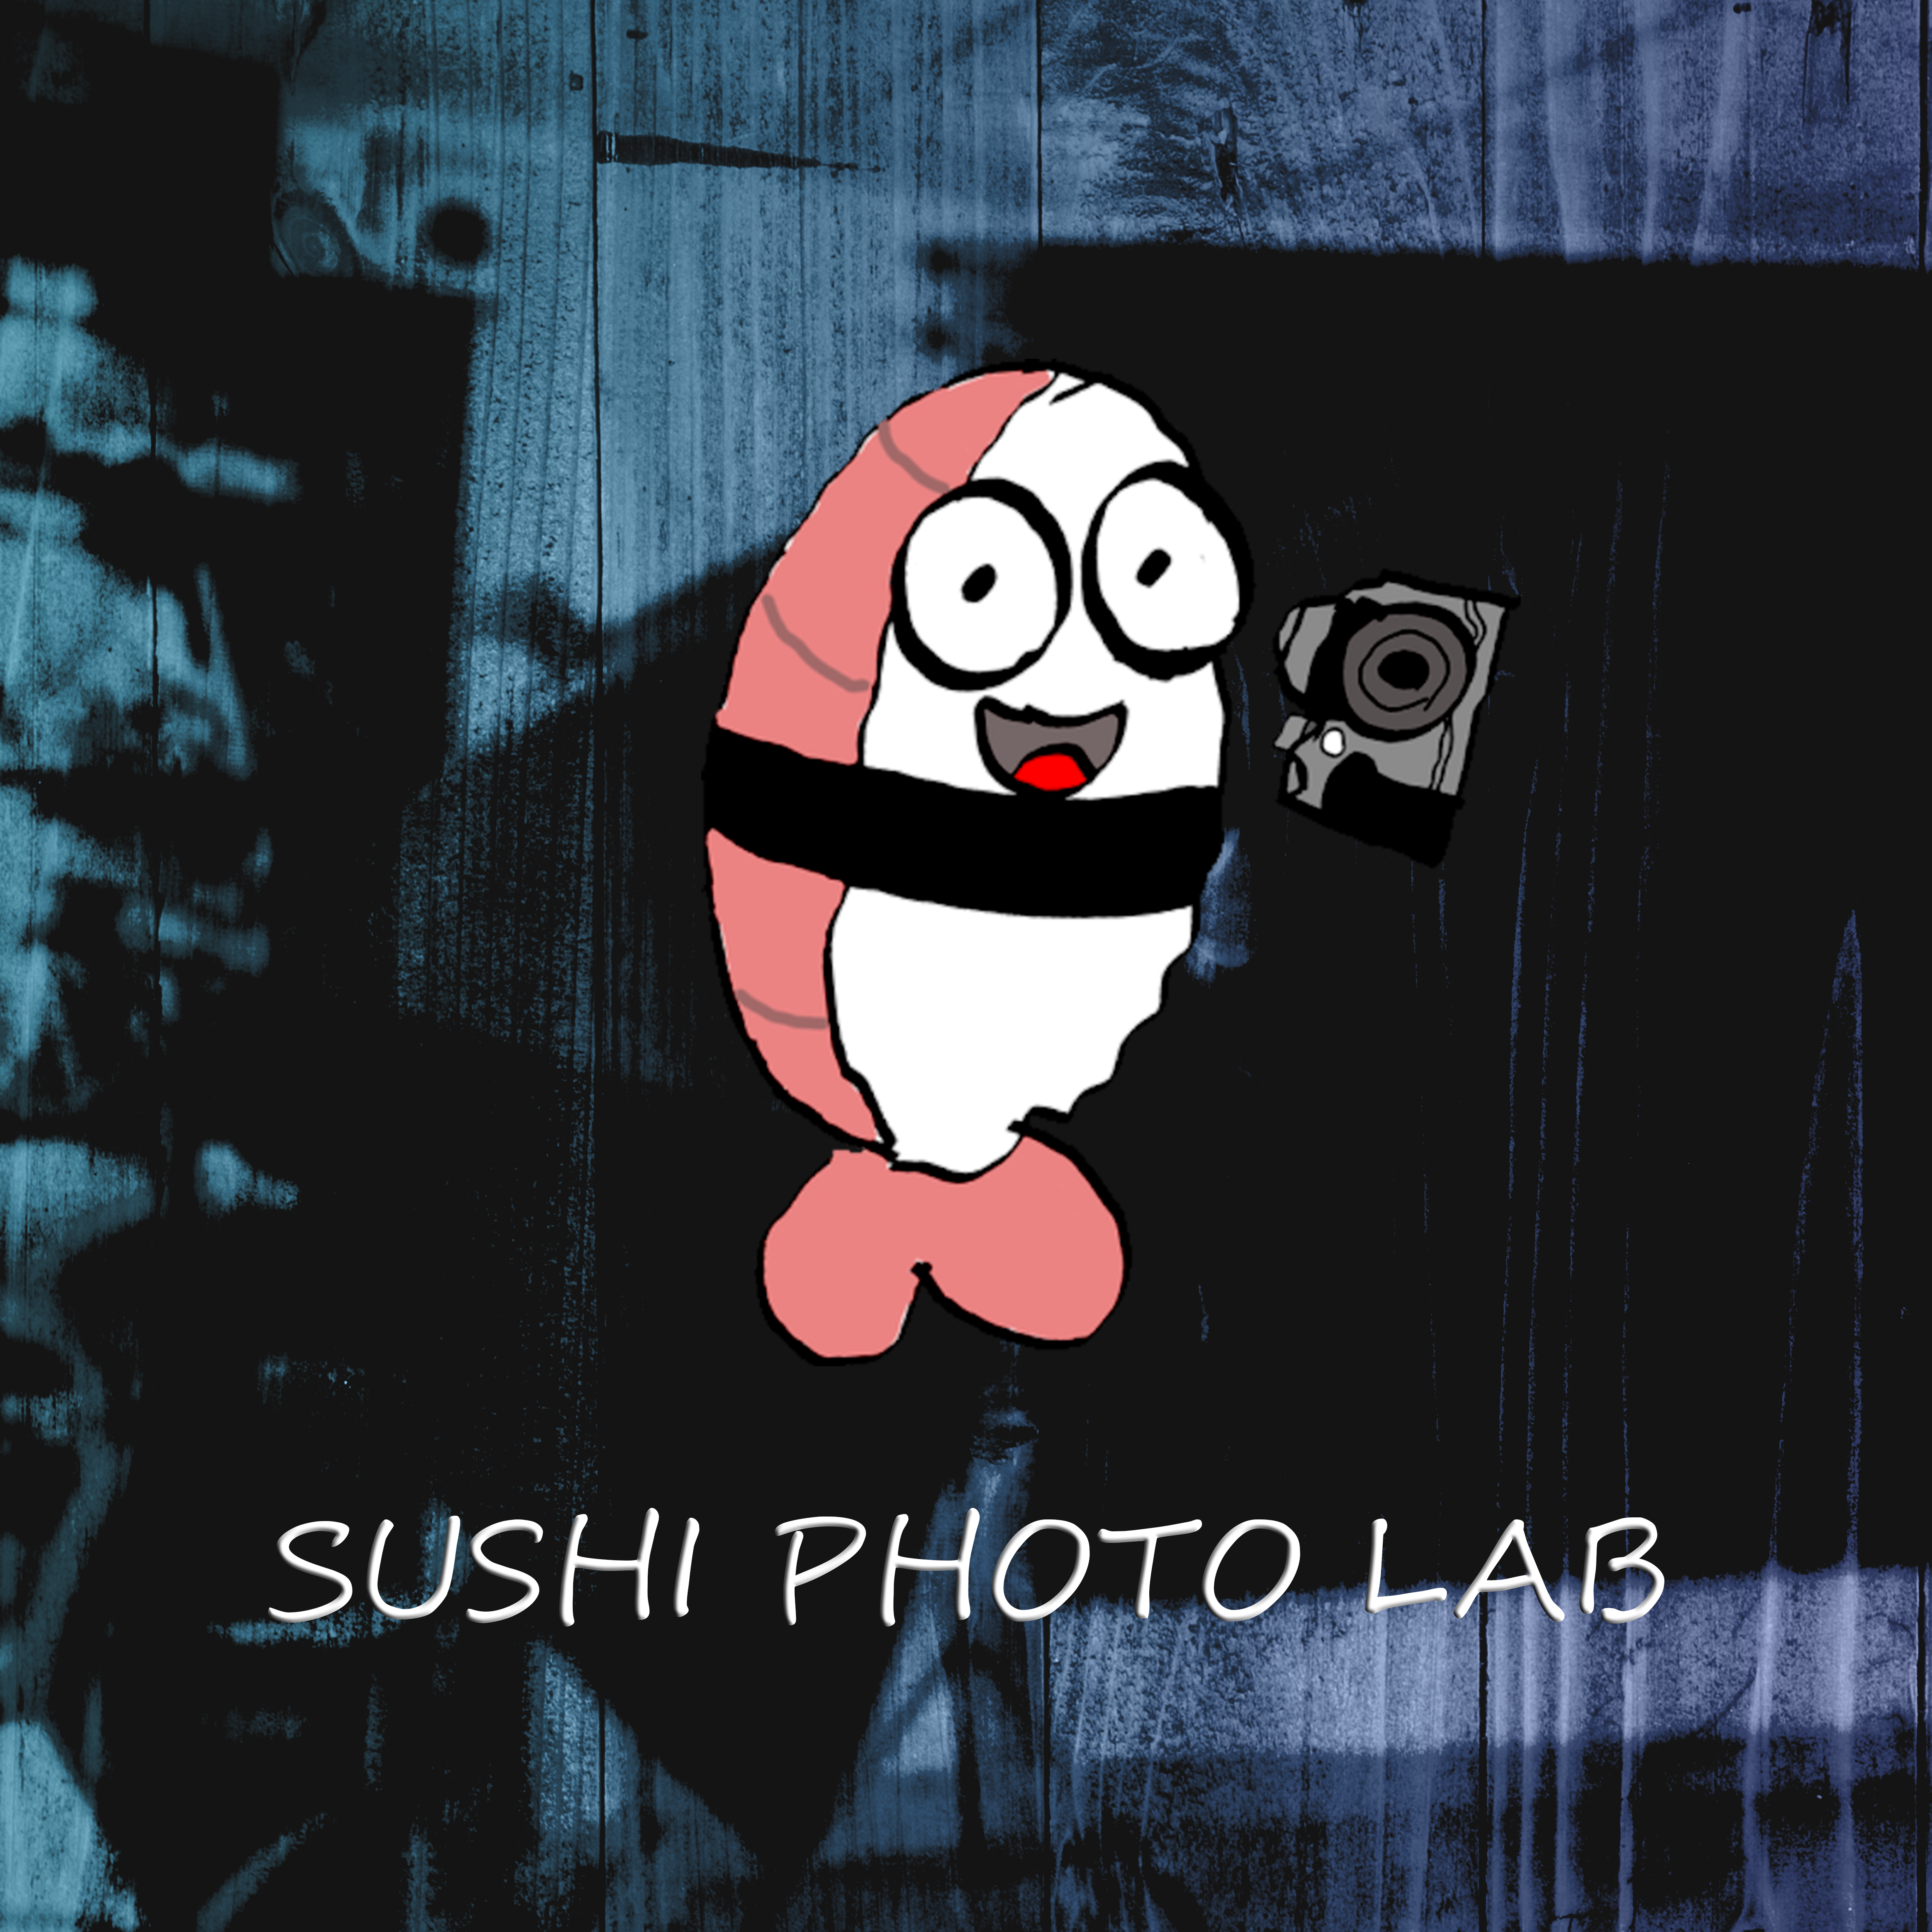 Sushi Photo Lab